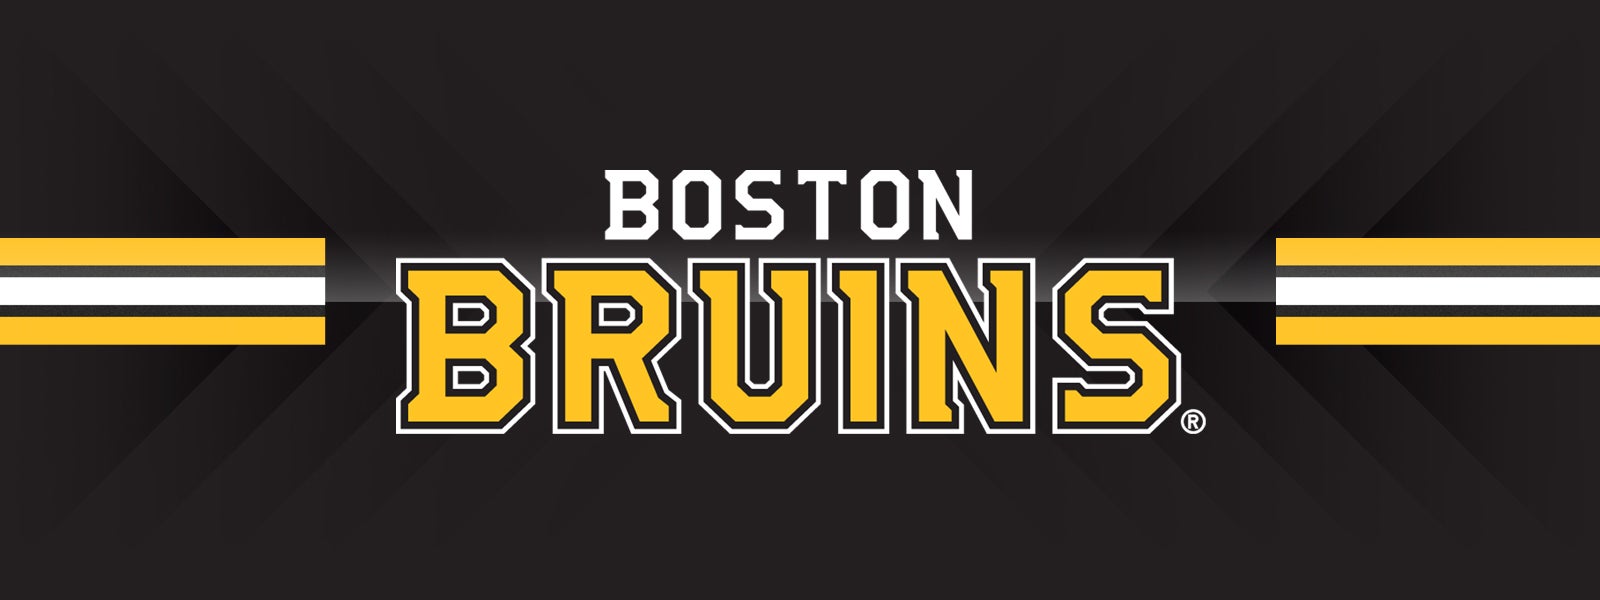  Bruins vs. Islanders